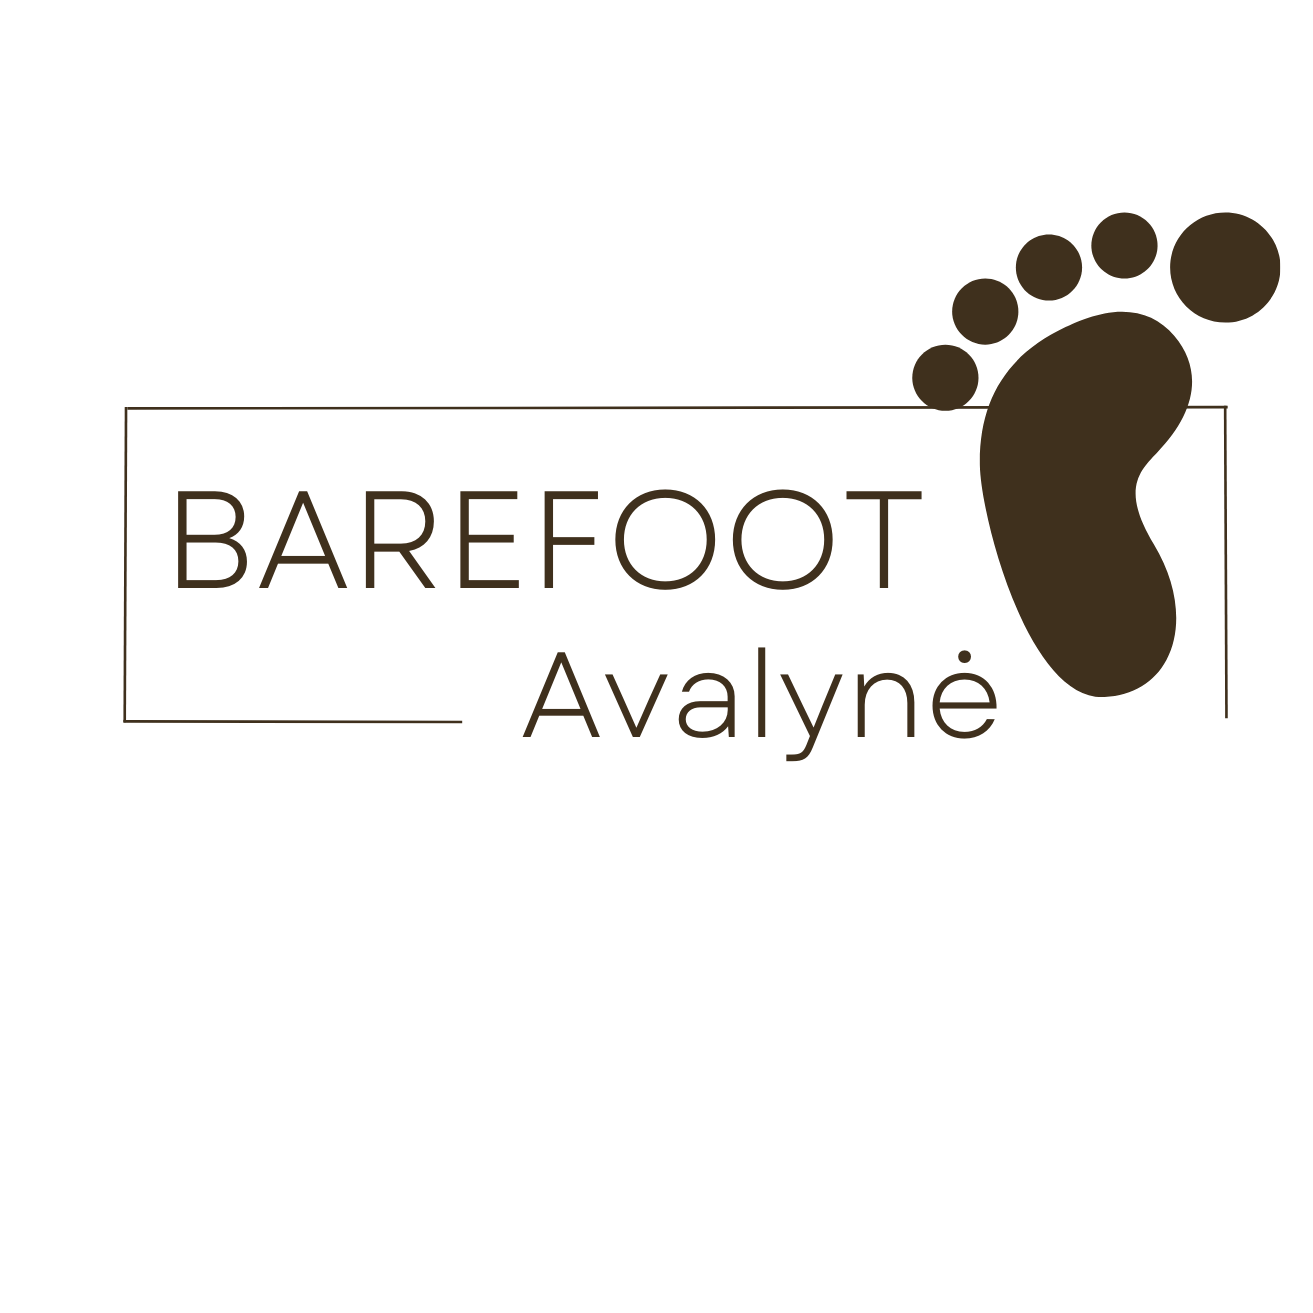 Barefoot avalynė 